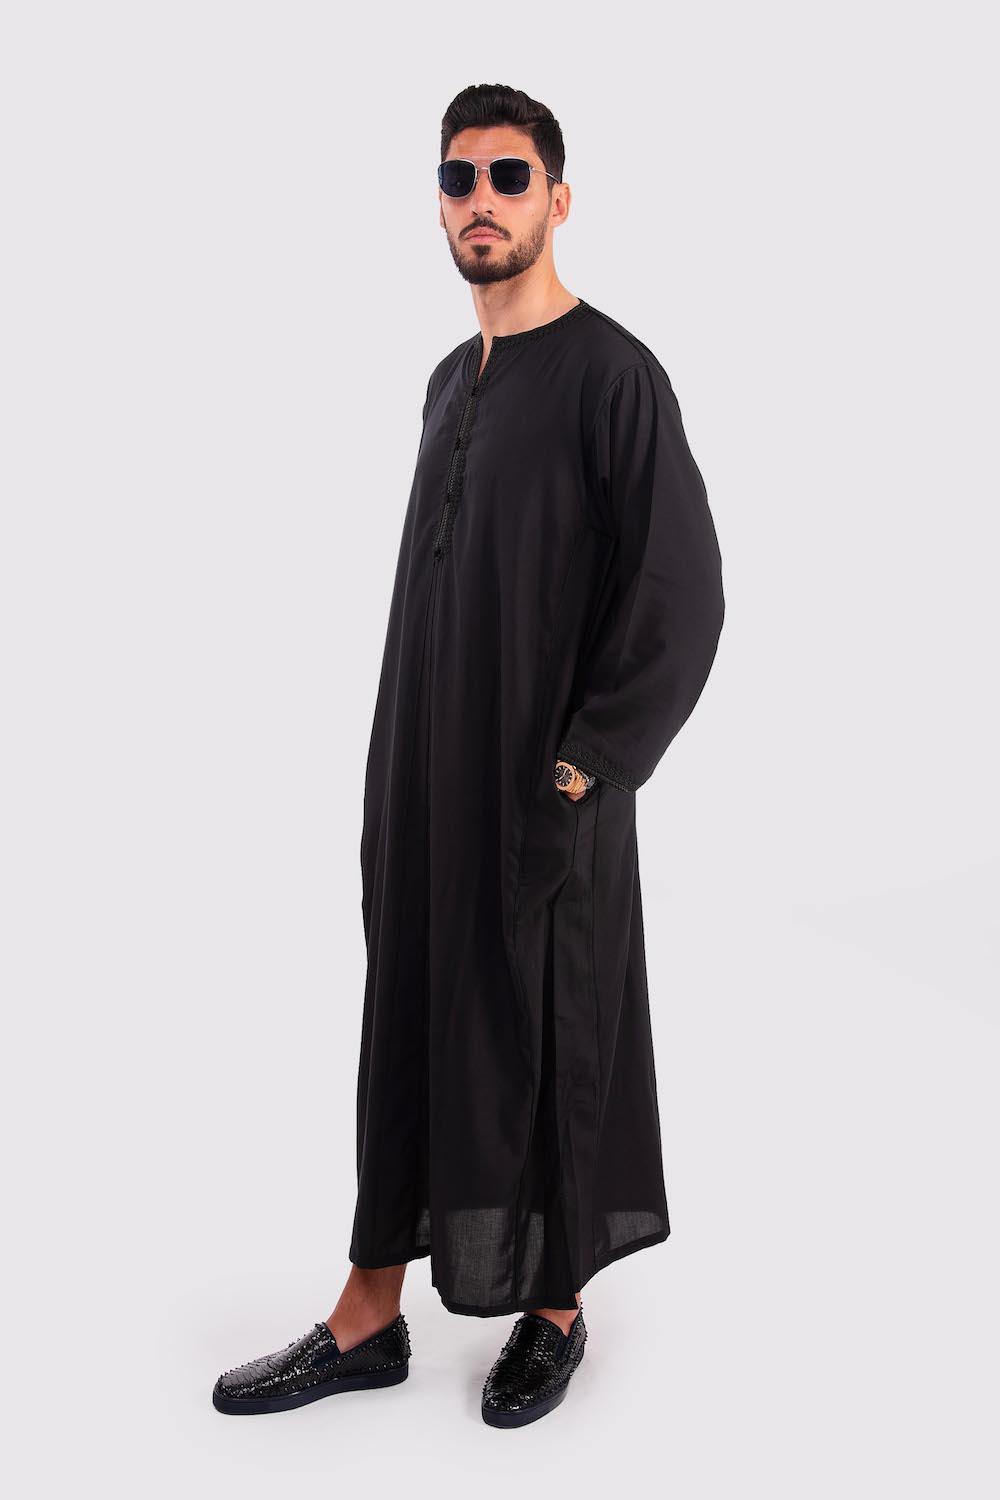 Cadi Men's Long Sleeve Full-Length Gandoura Thobe in Black